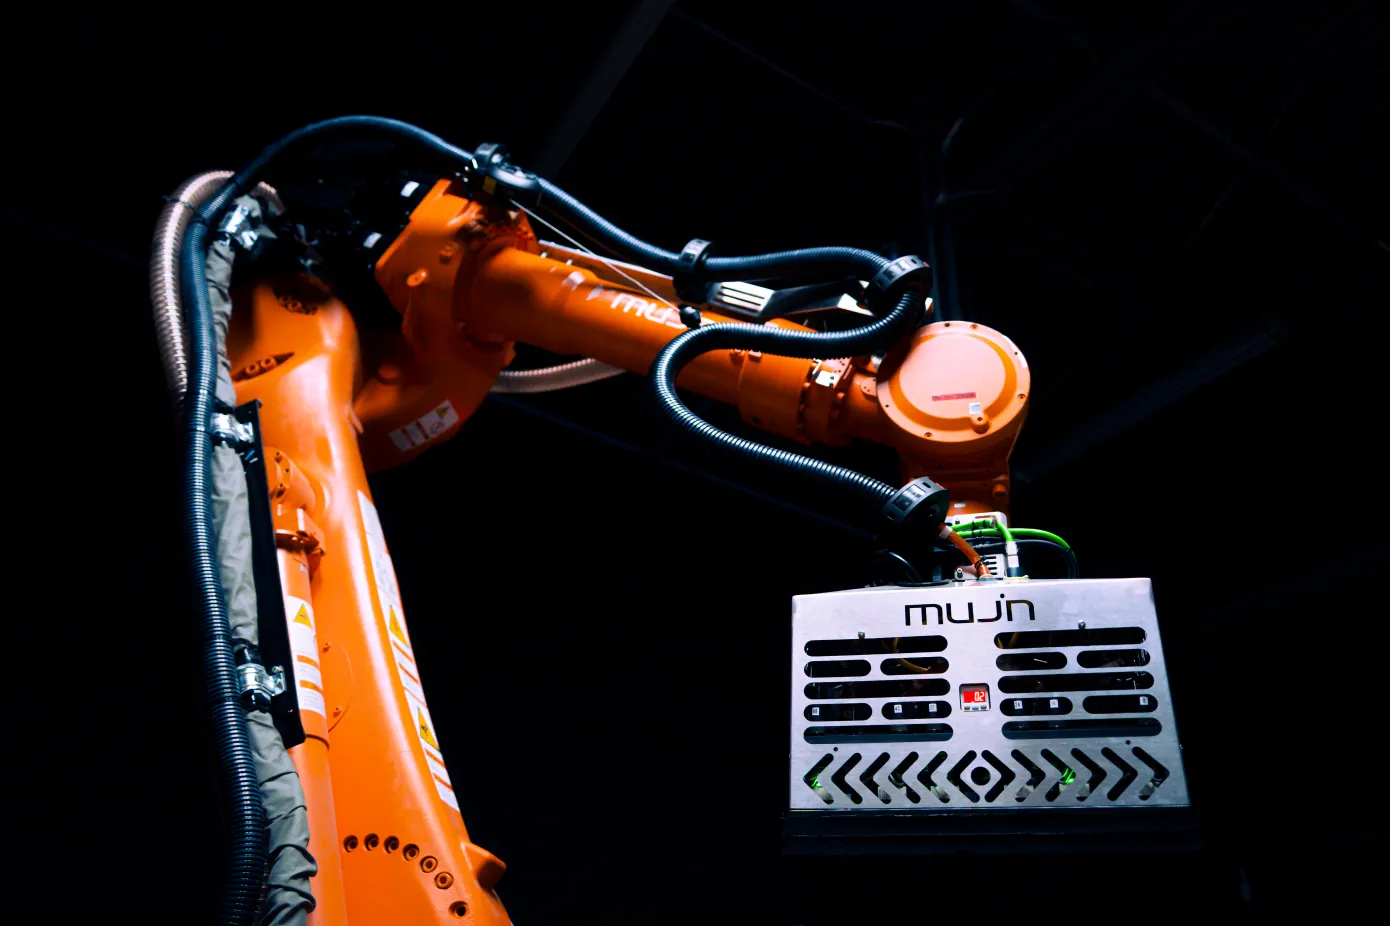 El desarrollador de software para robots Mujin ha obtenido 85 millones de dólares de financiación